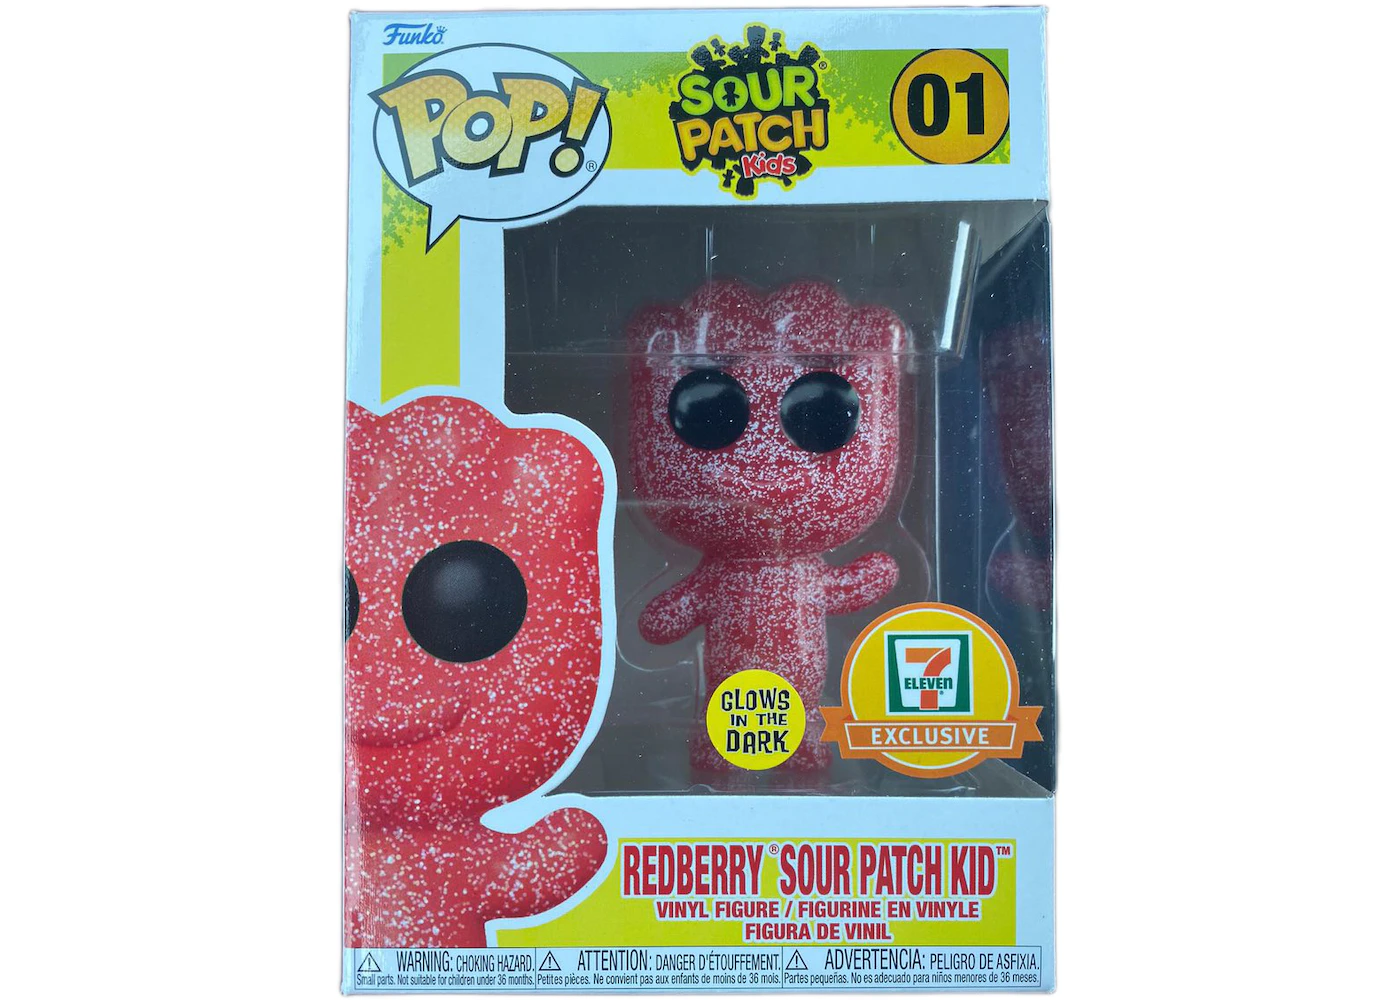 Funko Pop! Sour Patch Kids Redberry Sour Patch GITD 7-Eleven Exclusive Figure #01 JP